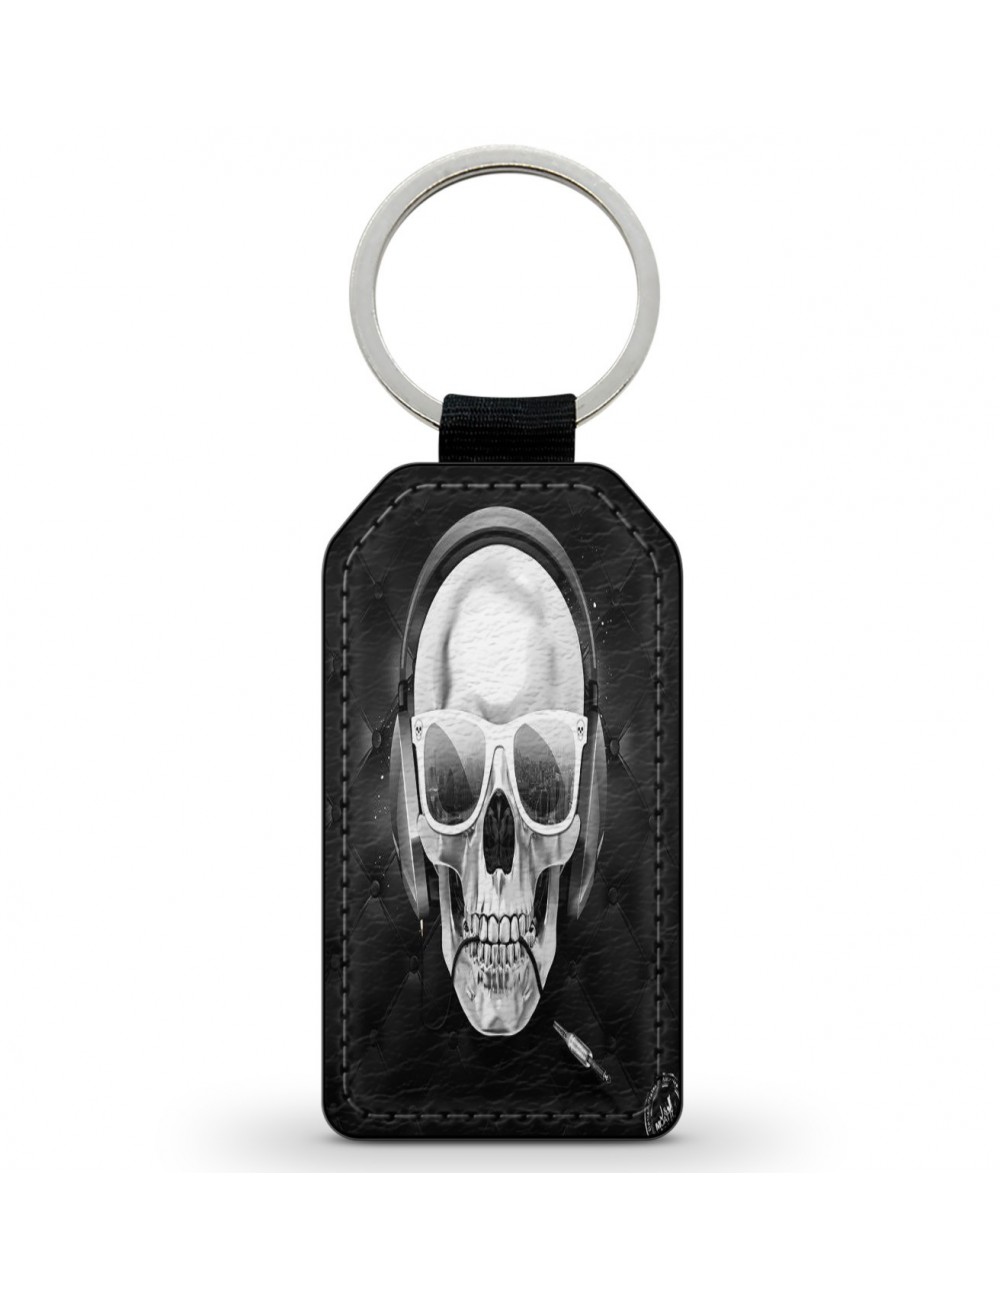 Porte-Clés Clefs Keychain Simili Cuir Skull Music Tête de Mort  